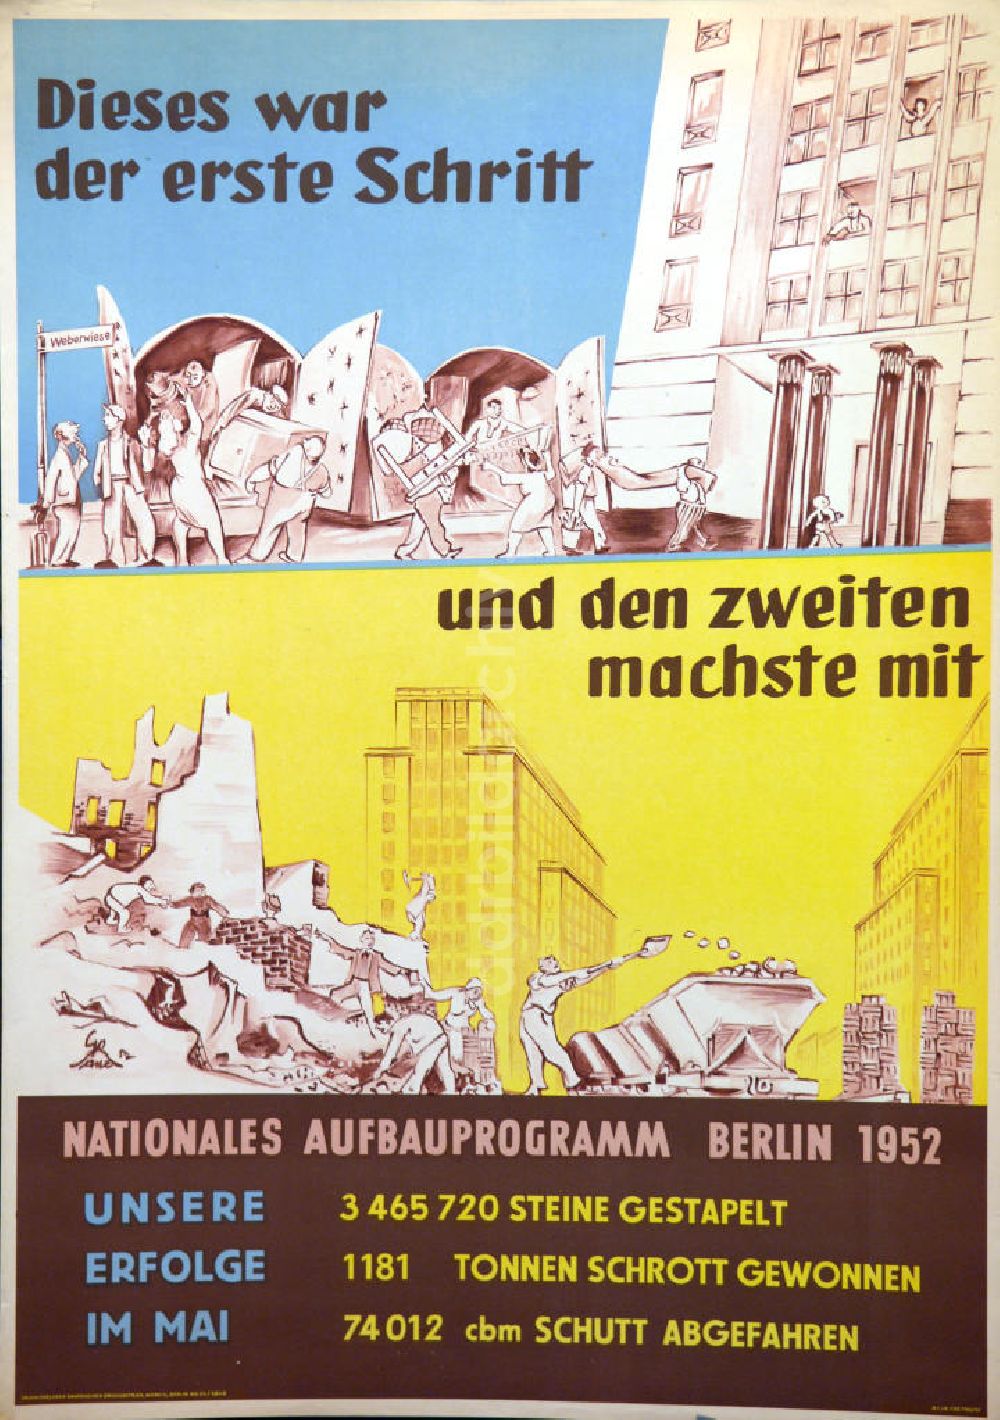 Berlin: Plakat von Herbert Sandberg Nationales Aufbauprogramm Berlin 1952 aus dem Jahr 1952